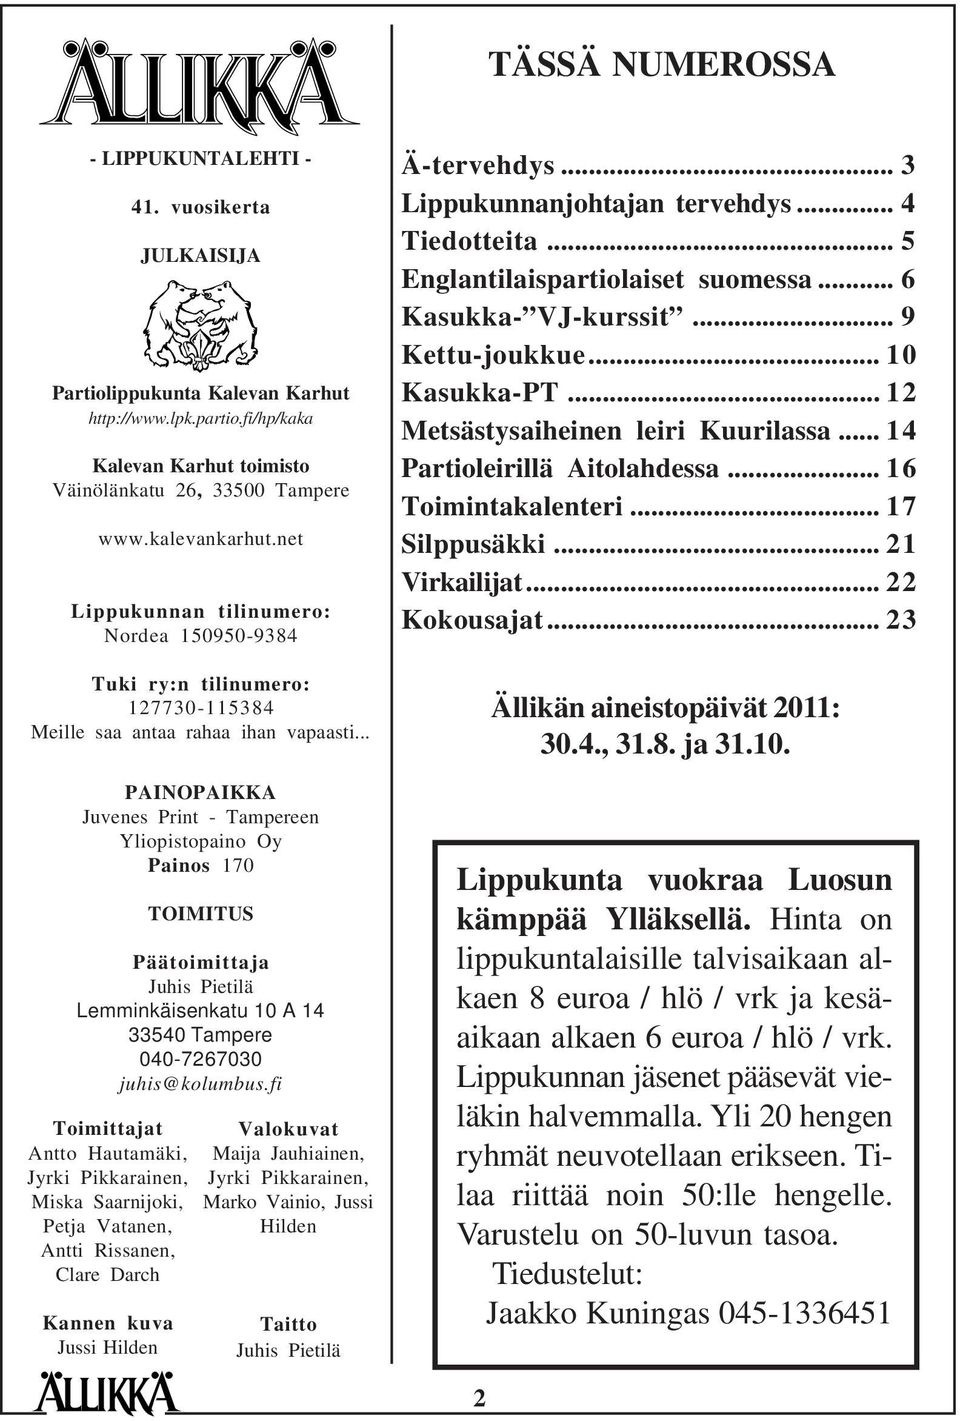 .. PAINOPAIKKA Juvenes Print - Tampereen Yliopistopaino Oy Painos 170 TOIMITUS Päätoimittaja Juhis Pietilä Lemminkäisenkatu 10 A 14 33540 Tampere 040-7267030 juhis@kolumbus.